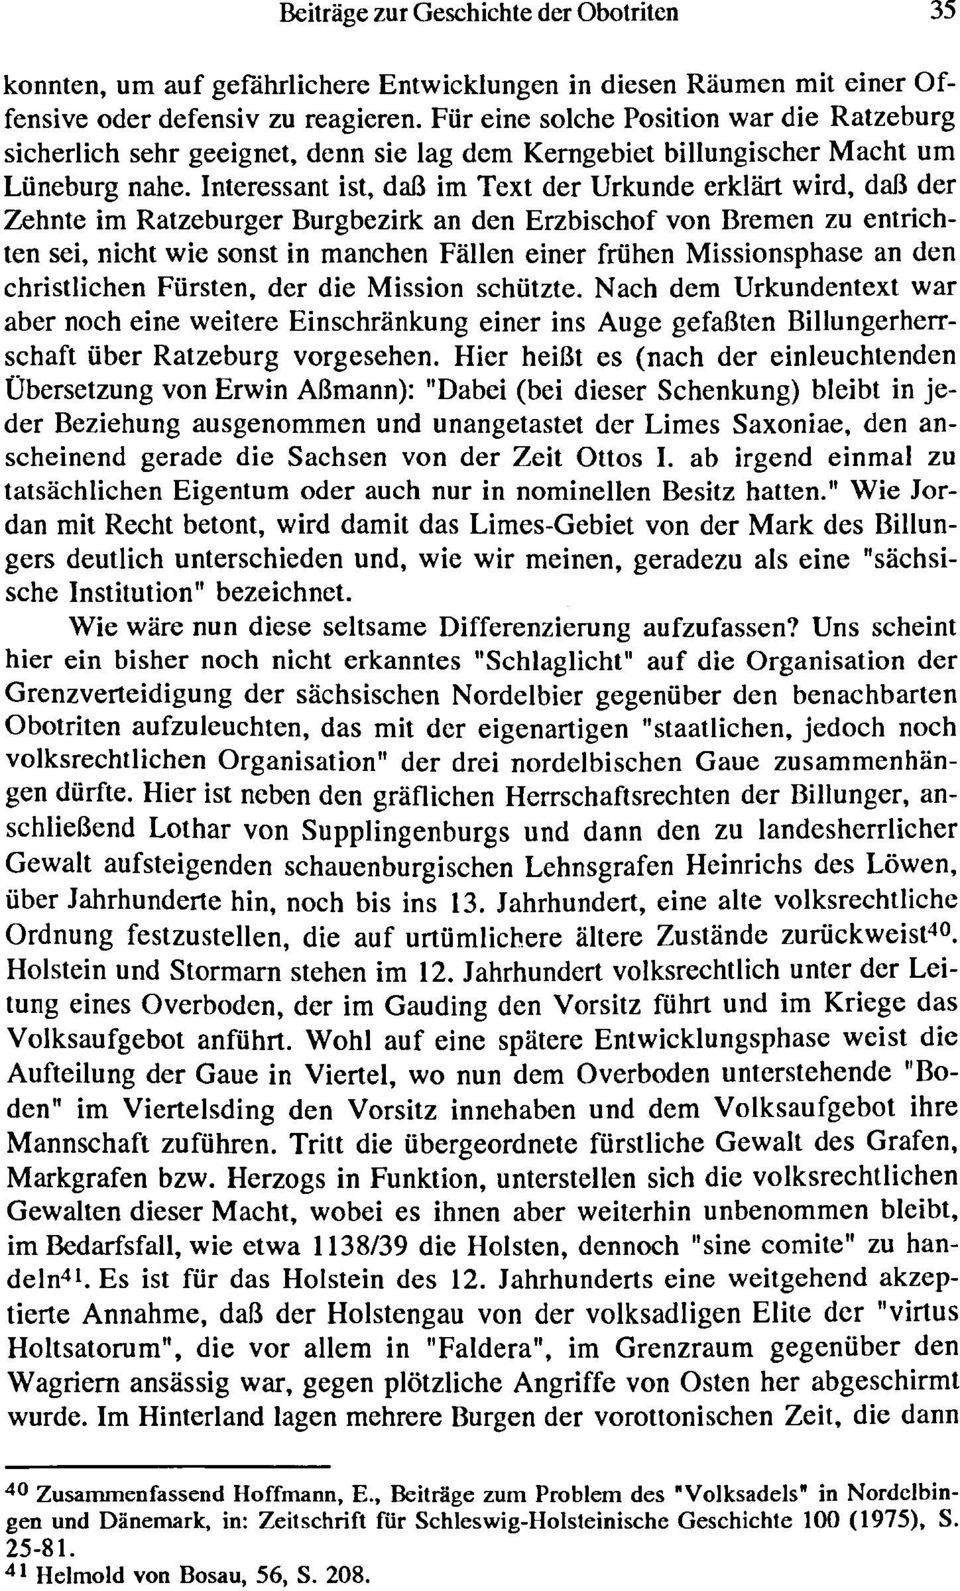 Interessant ist, daß im Text der Urkunde erklärt wird, daß der Zehnte im Ratzeburger Burgbezirk an den Erzbischof von Bremen zu entrichten sei, nicht wie sonst in manchen Fällen einer frohen